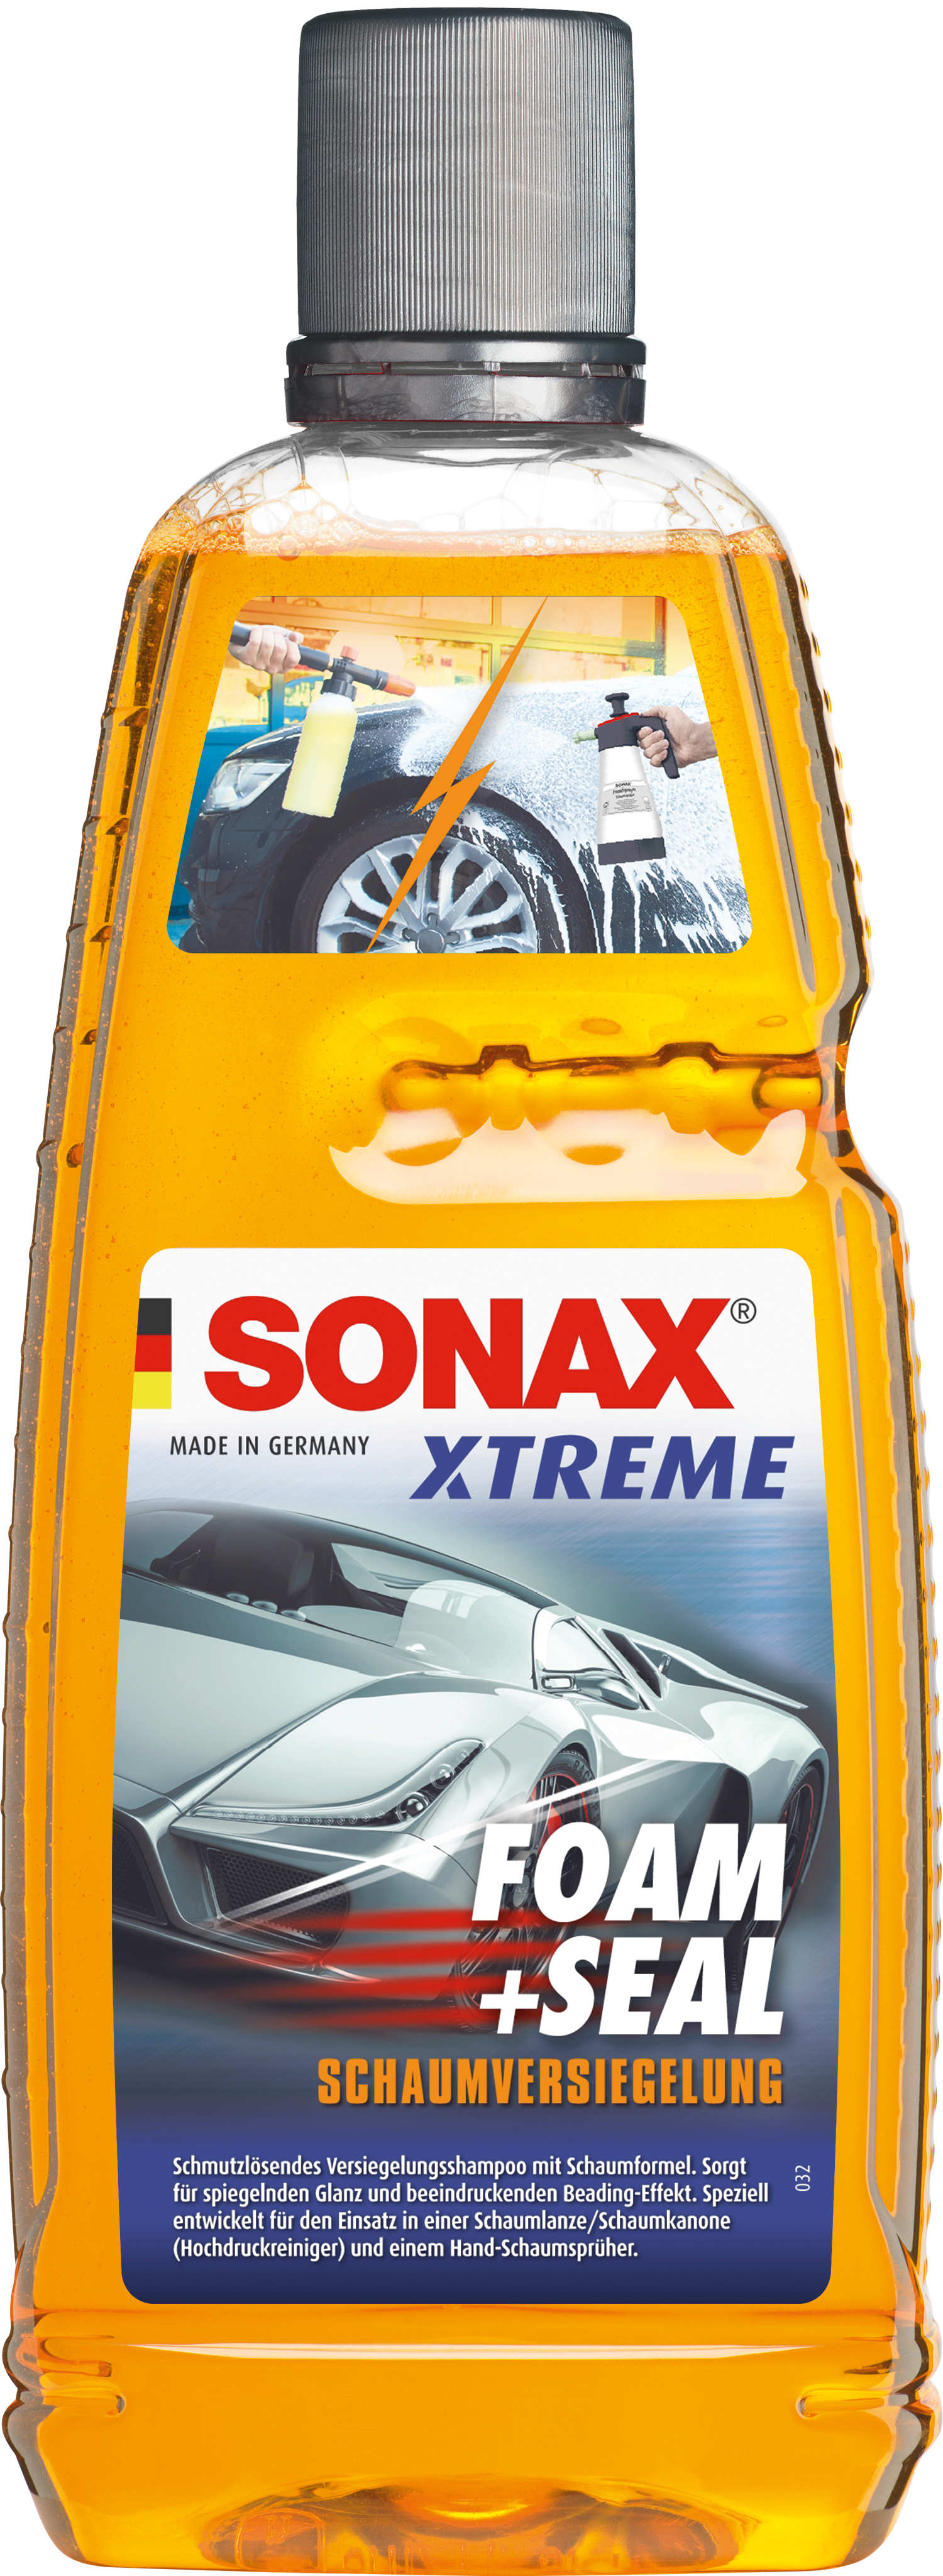 SONAX XTREME Foam+Seal - Weigola Hygienevertrieb